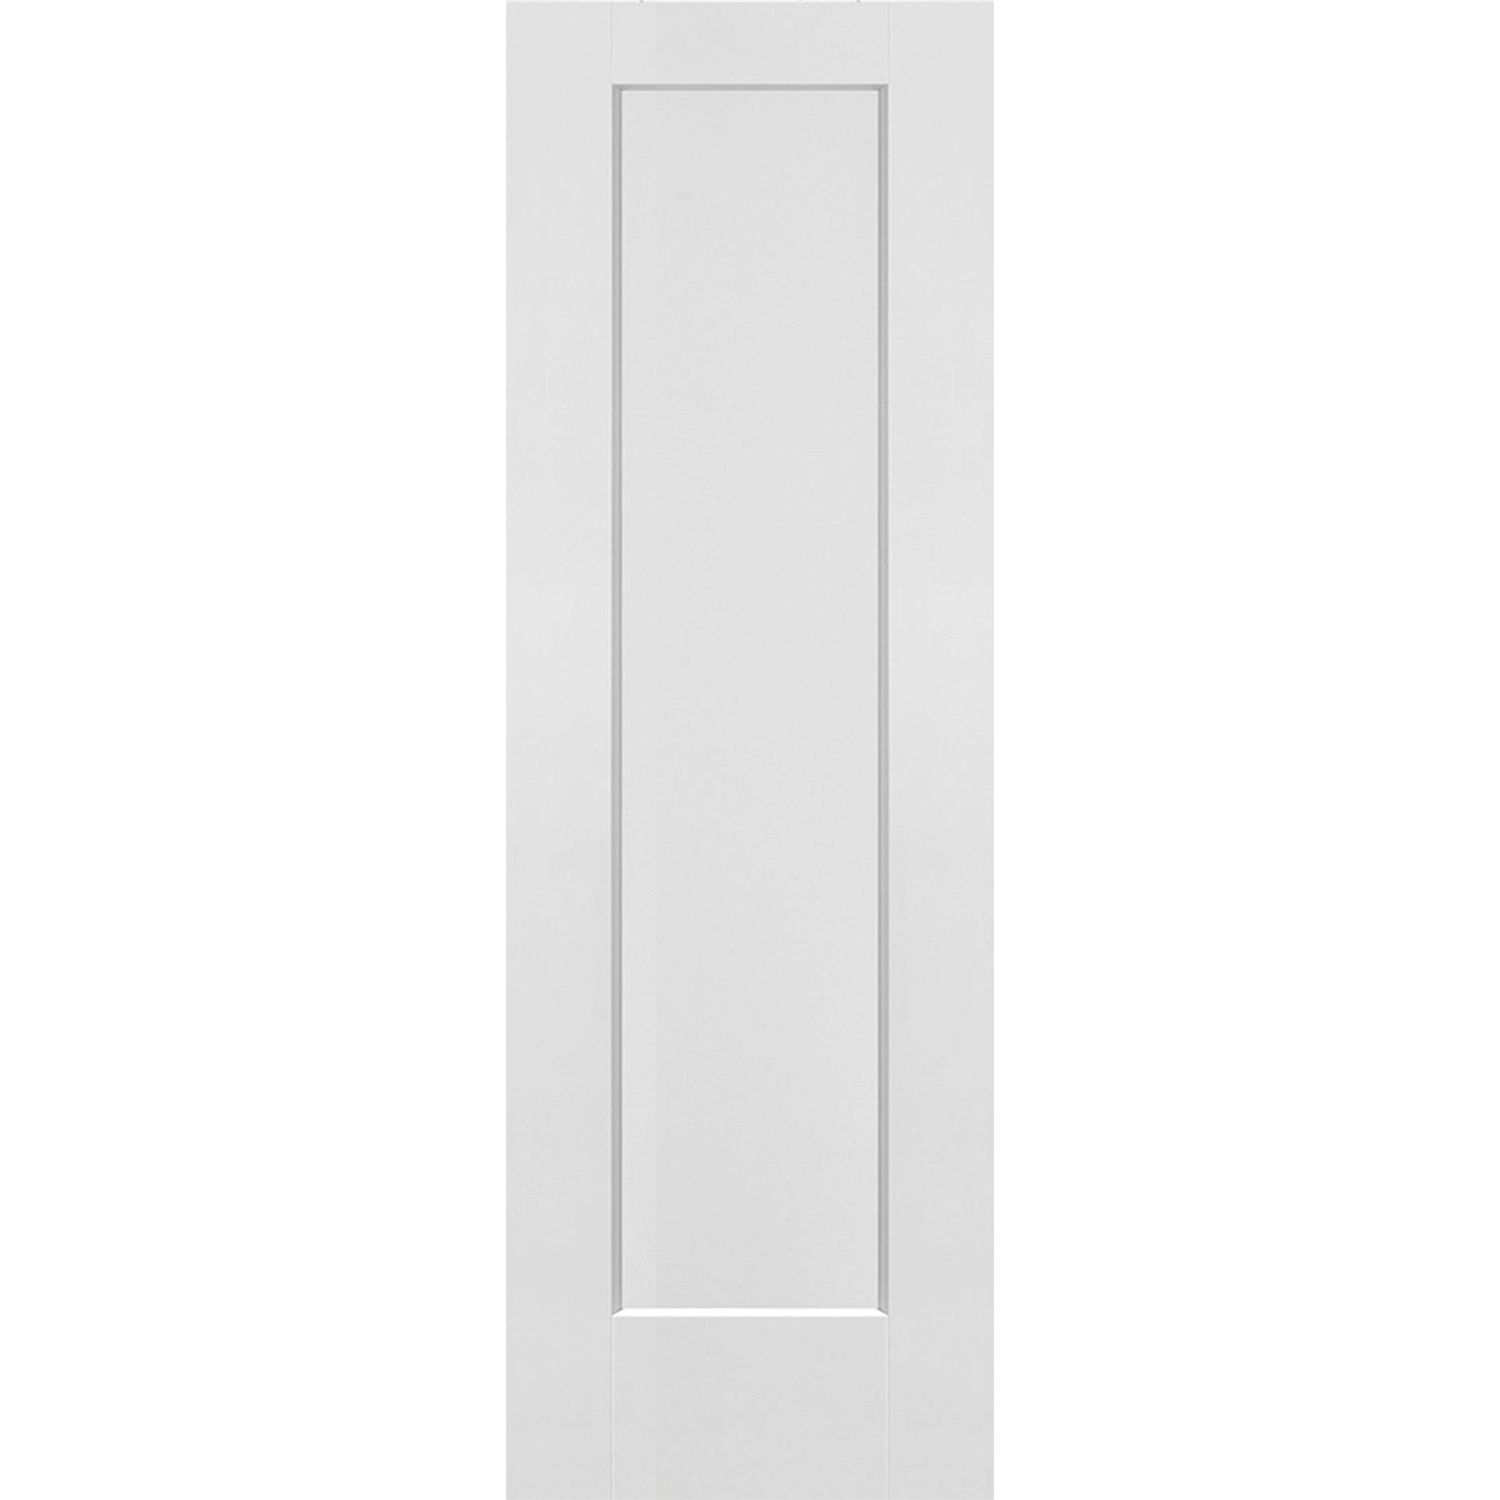 1 Panel Interior Door Shaker Style (Hollow Core) - 26 x 80 - D1HS26